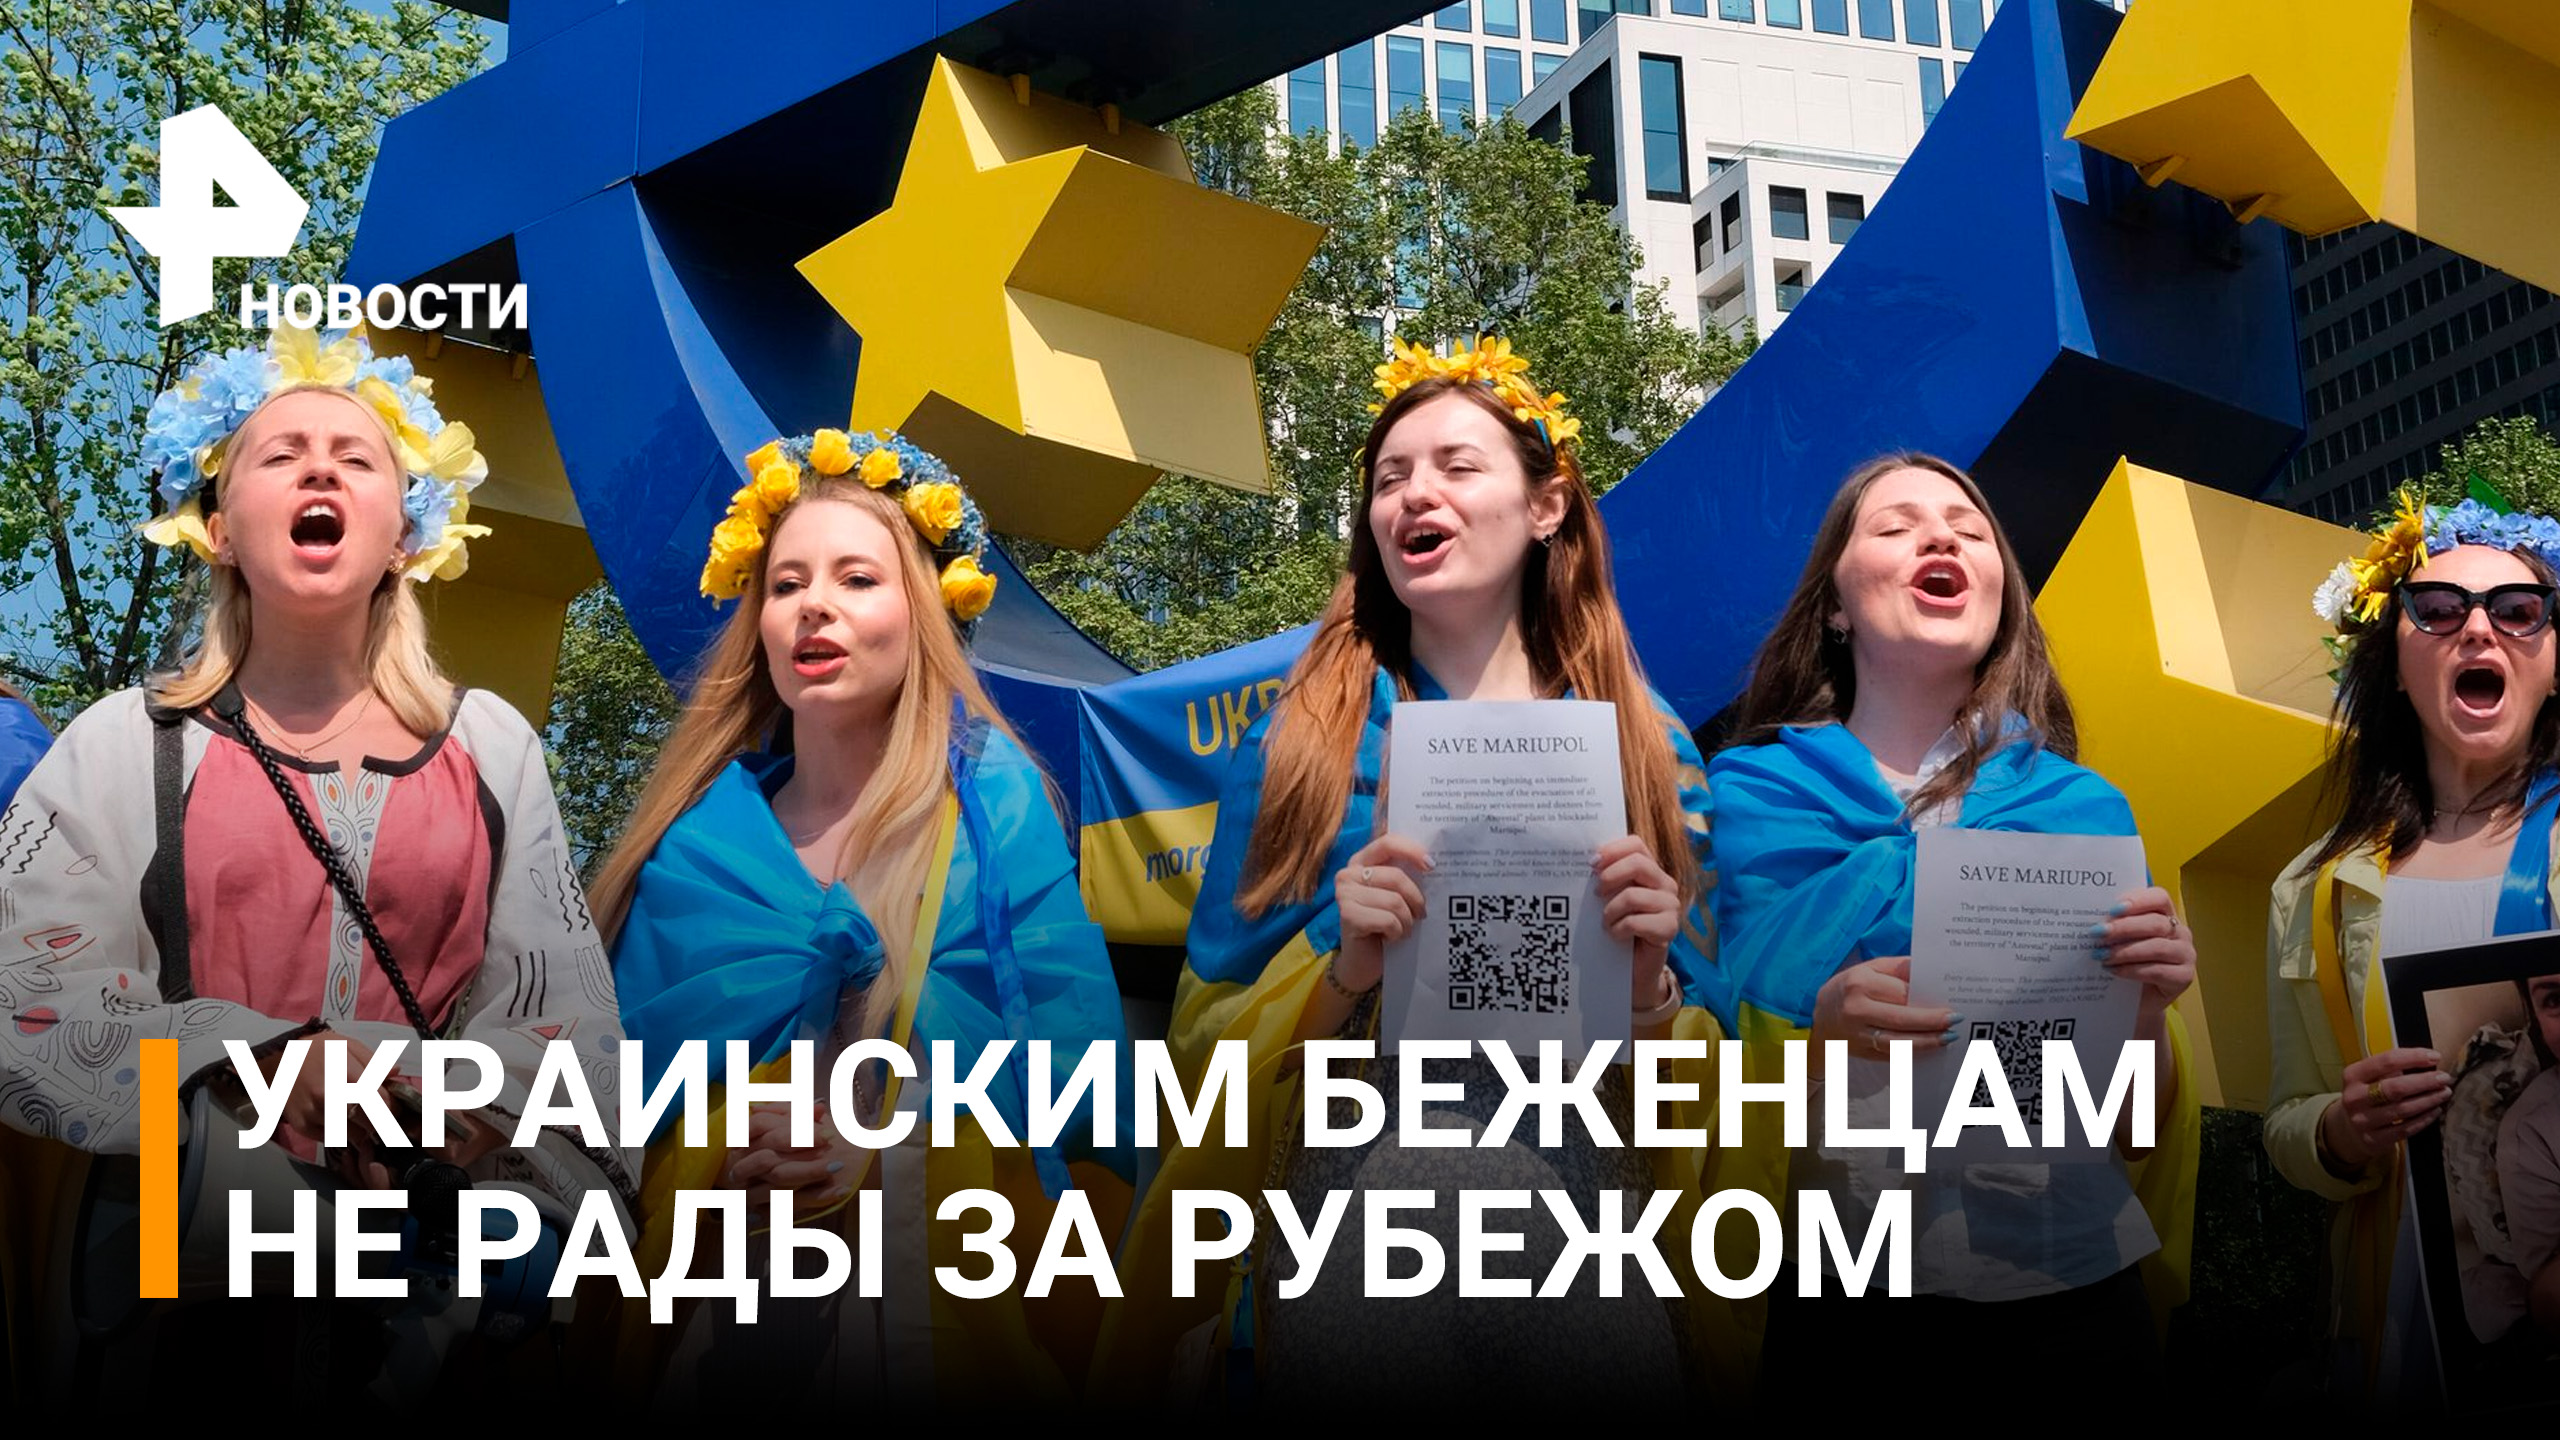 Хамят и не работают – почему украинским беженцам не рады в Европе / РЕН Новости